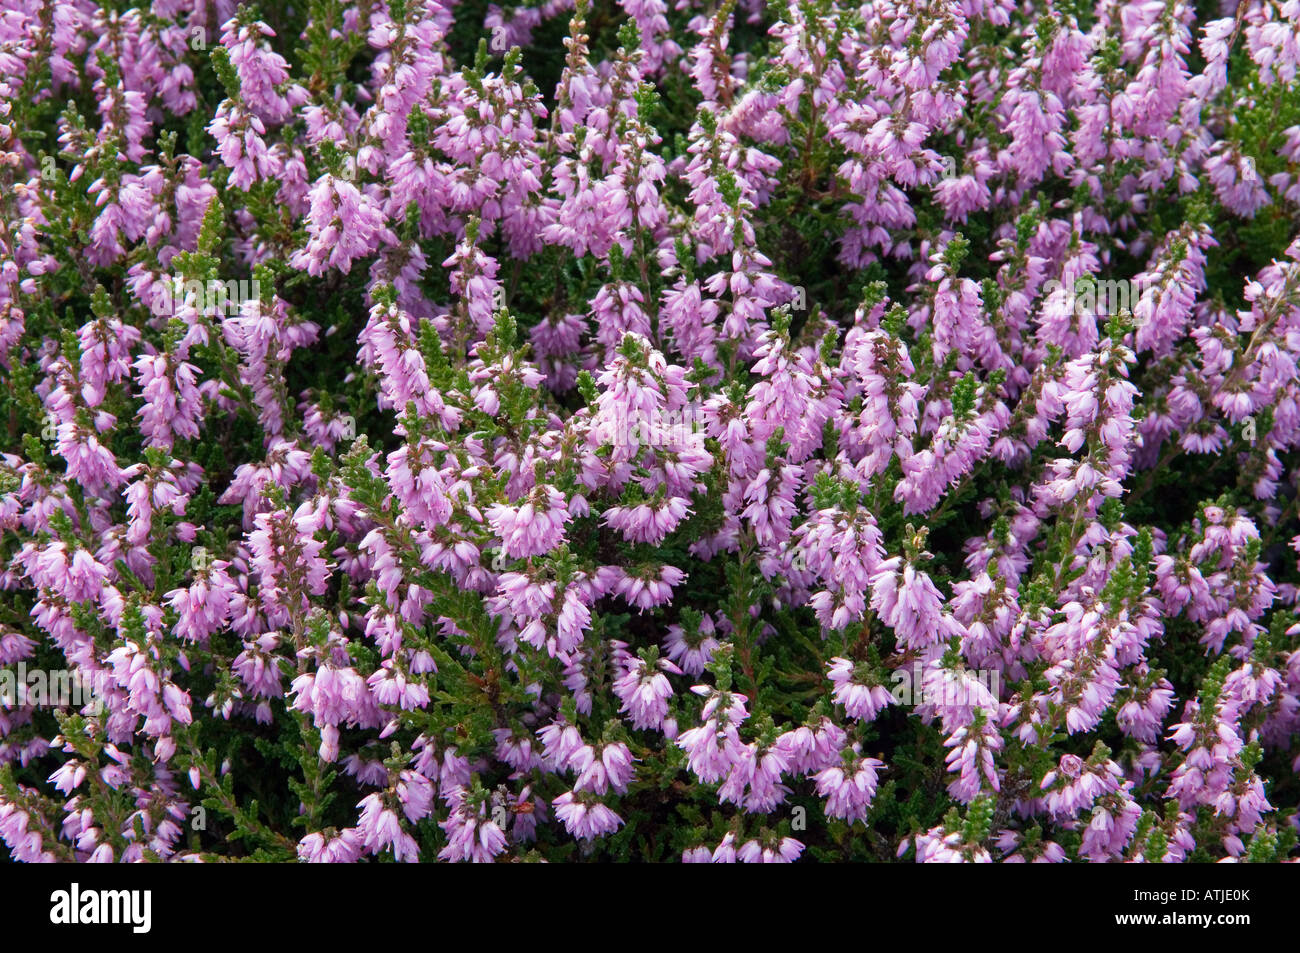 Scottish viola erica (Erica). Piante Ericaceous diffusa sui pendii e mori della Scozia, Regno Unito Foto Stock